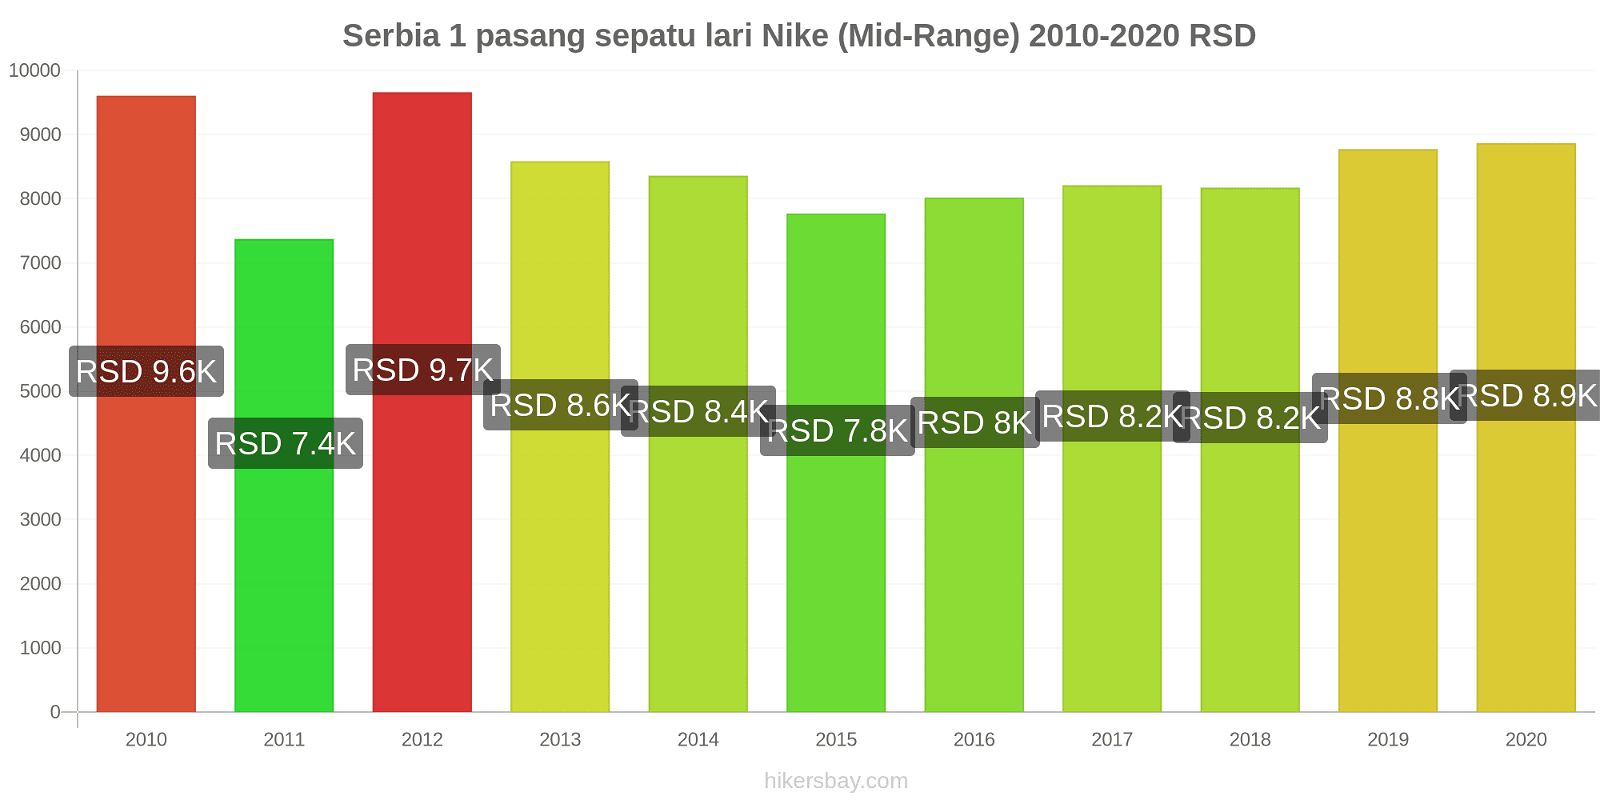 Serbia perubahan harga 1 pasang sepatu lari Nike (Mid-Range) hikersbay.com